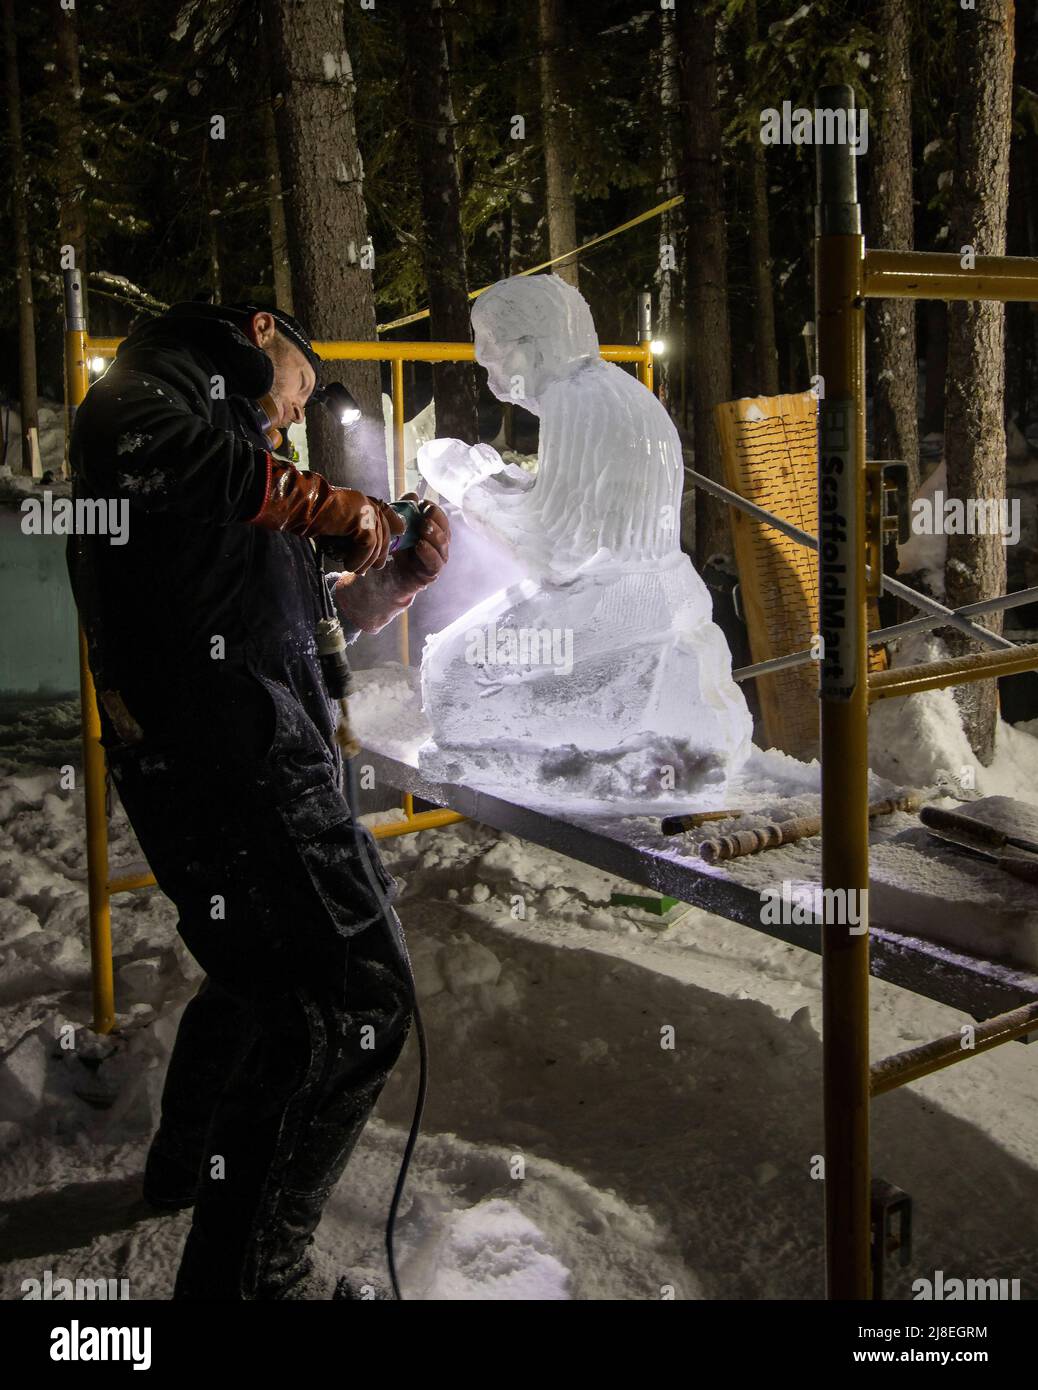 El hombre esculpe hielo en uno de los muchos carrvngs de hielo vistos en el Campeonato Mundial de Arte de Hielo fuera de Fairbanks, AK, en febrero. Foto de stock